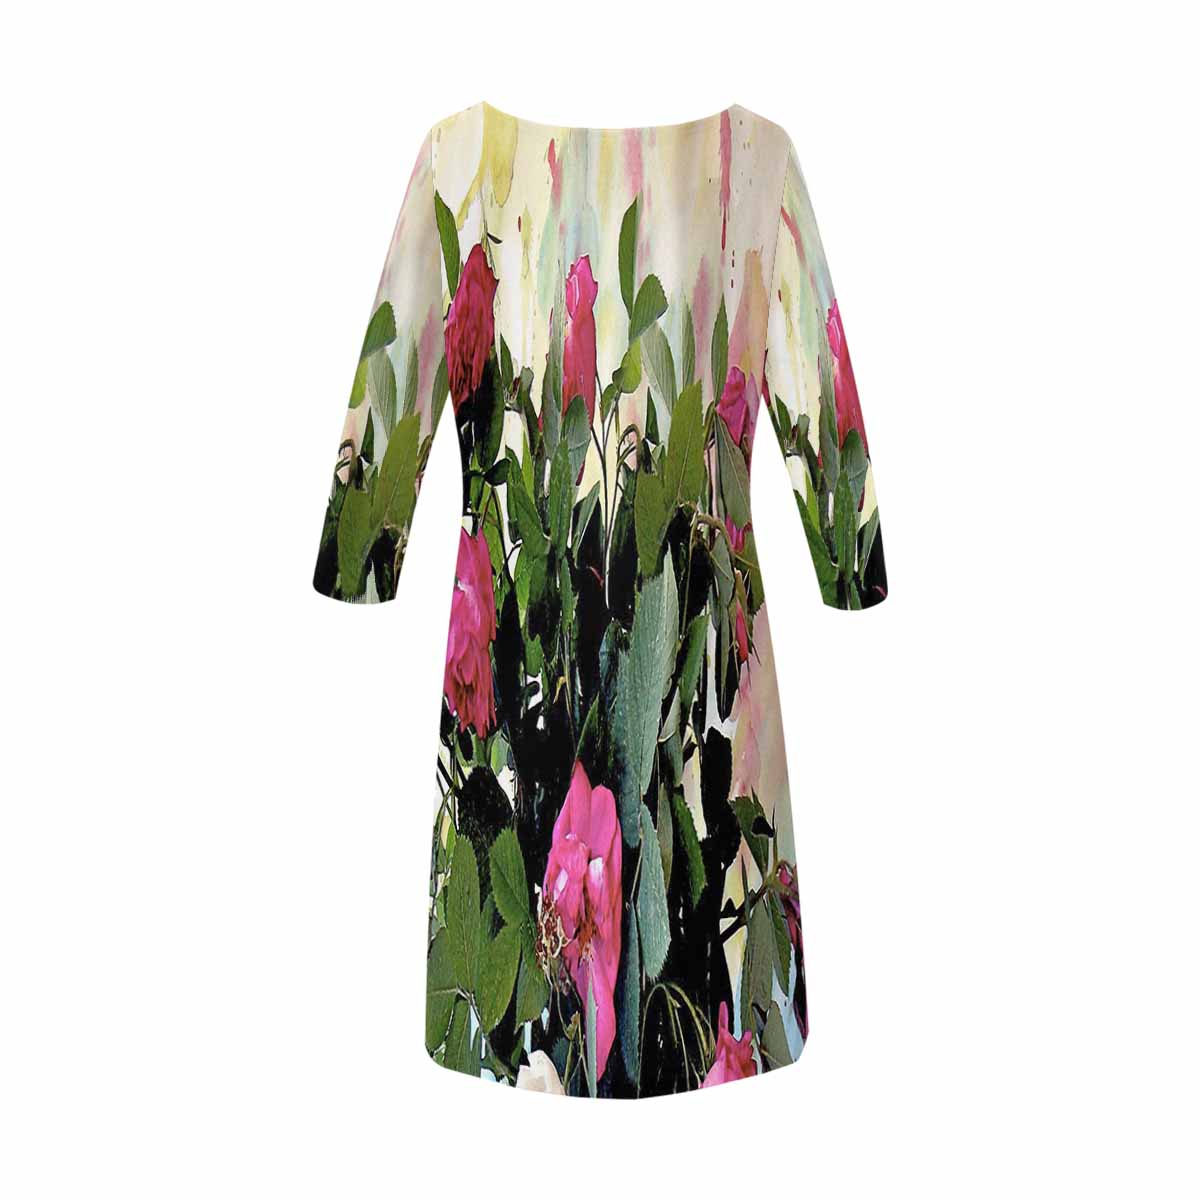 Vintage floral loose dress, model D29532 Design 22